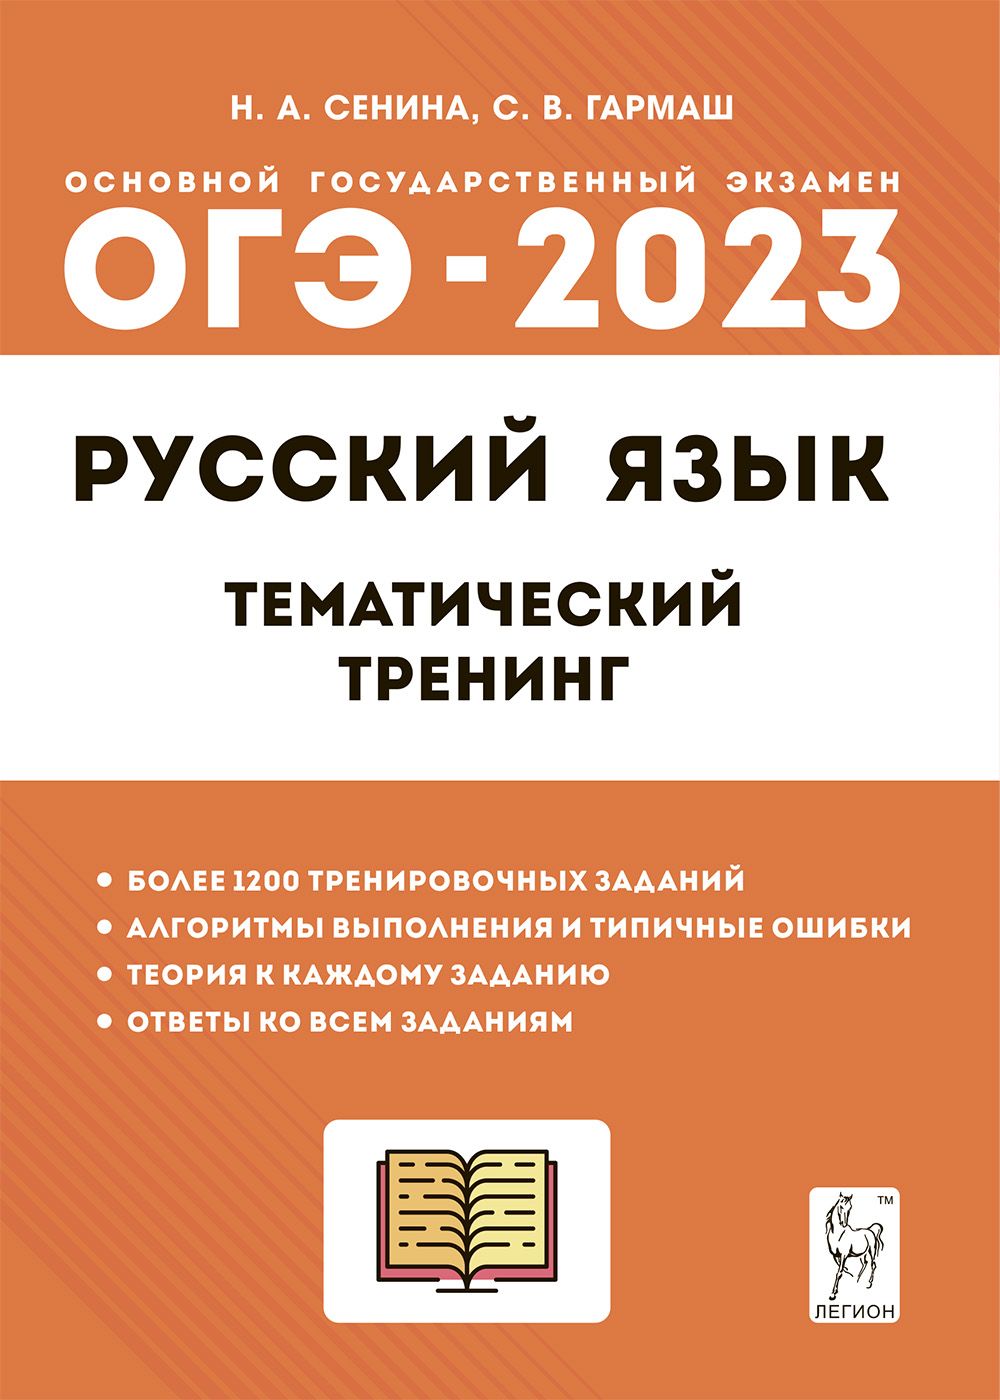 Русский язык. ОГЭ-2023. 9-й класс. Тематический тренинг Н. А. Сенина, С. В. Гармаш